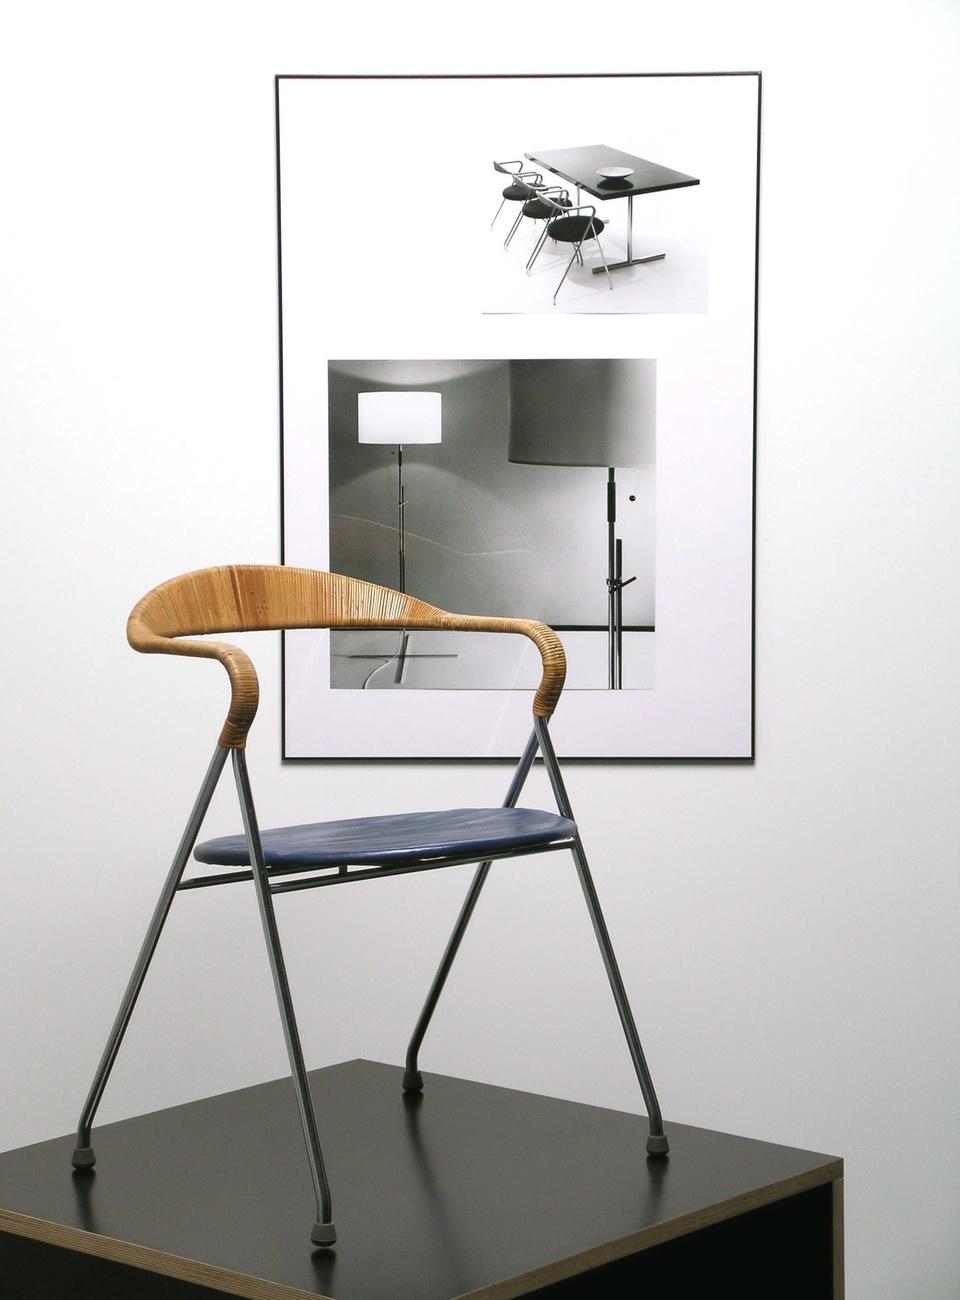 Le fauteuil "HE 103" conçu par Hans Eichenberger 1955, devant des photographies d'objets d'Alfred Habluetzel. [Keystone/Museum fuer Gestaltung Zürich - FX JAGGY]